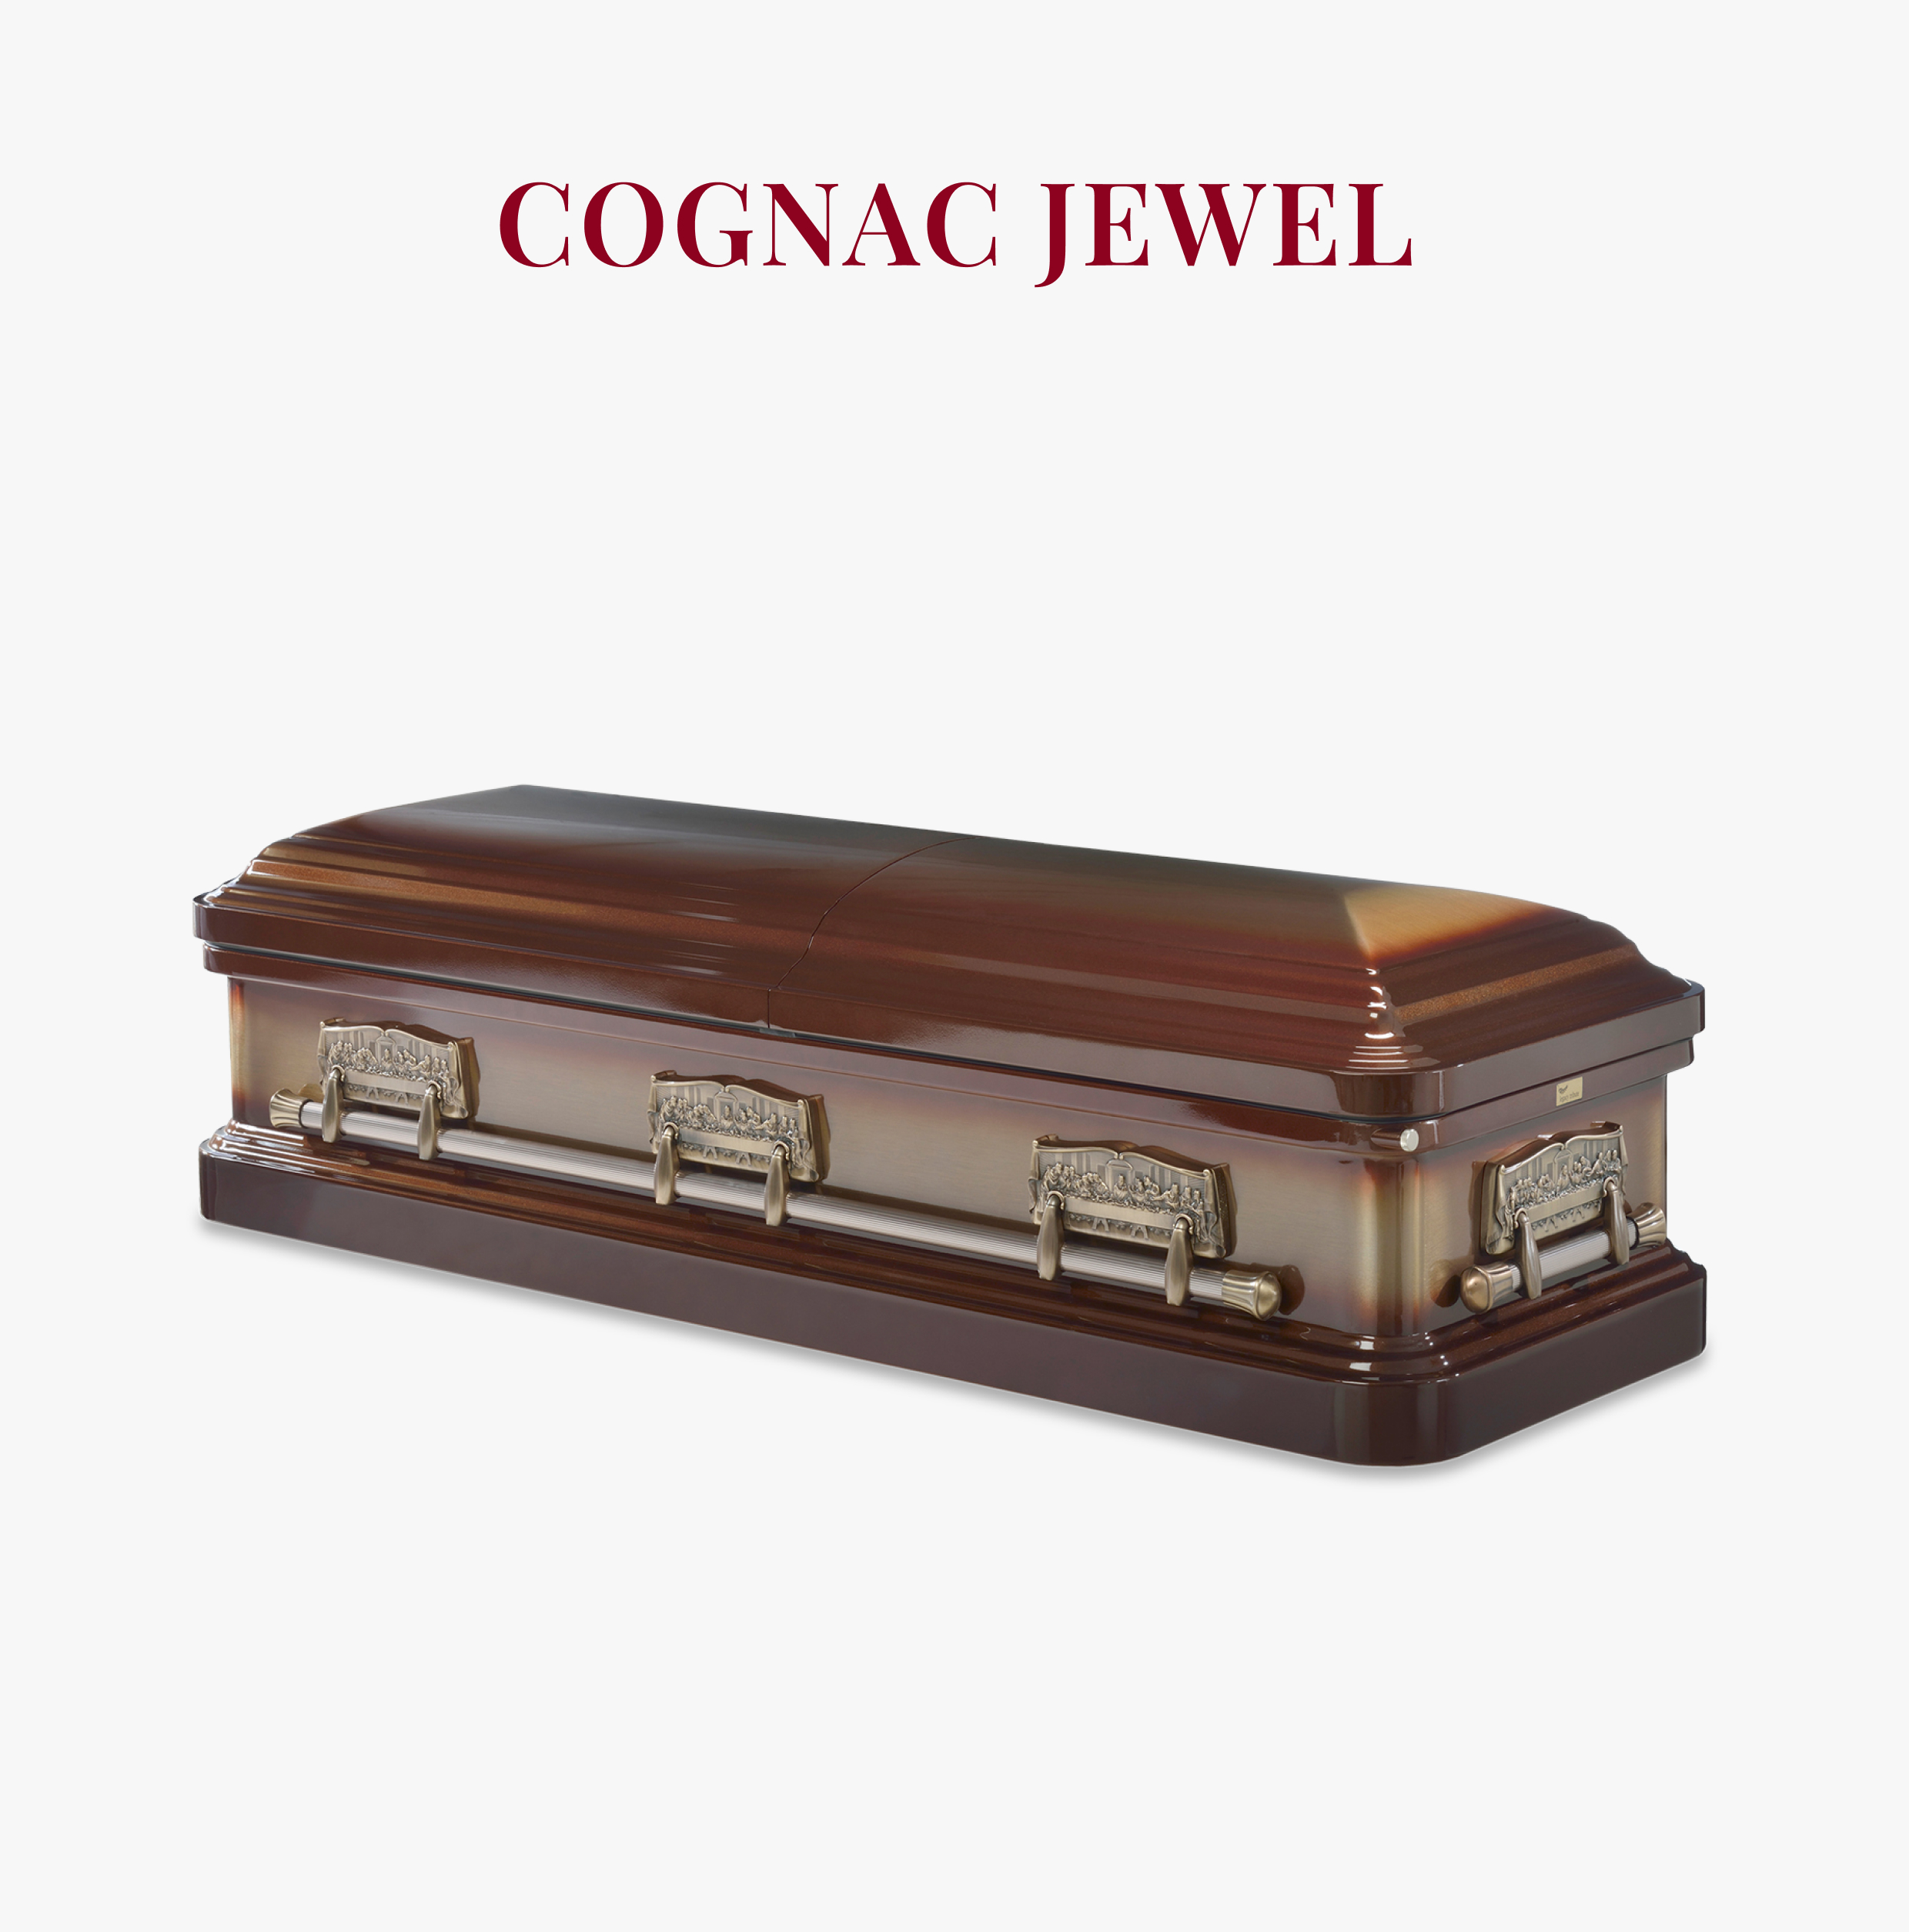 Cognac Jewel